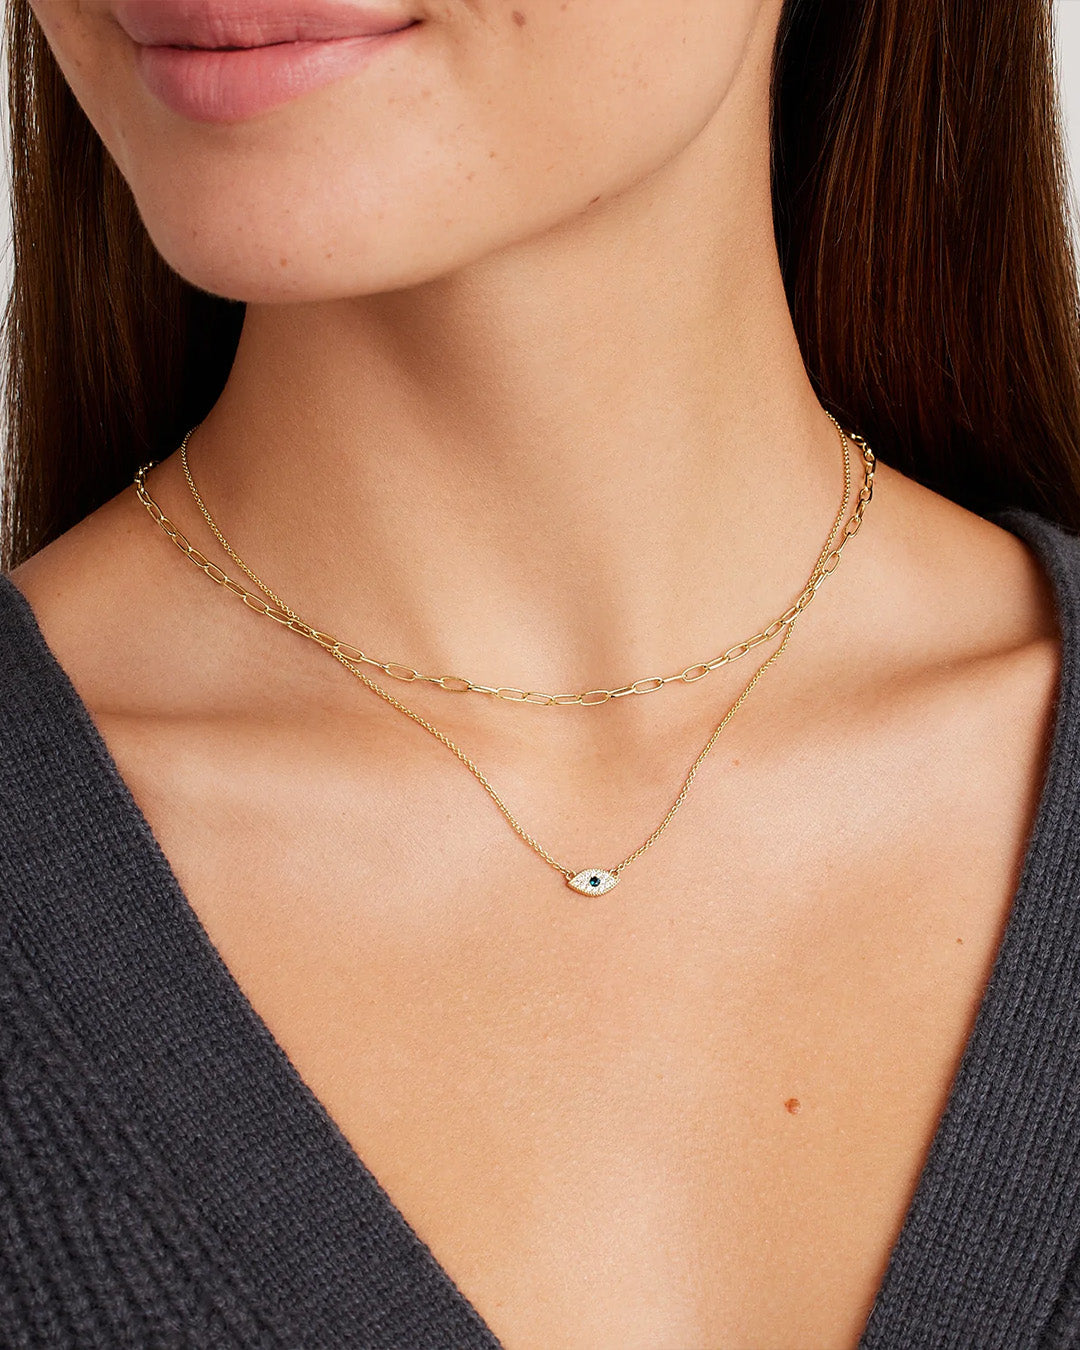 Gorjana Women's Classic Diamond Necklace